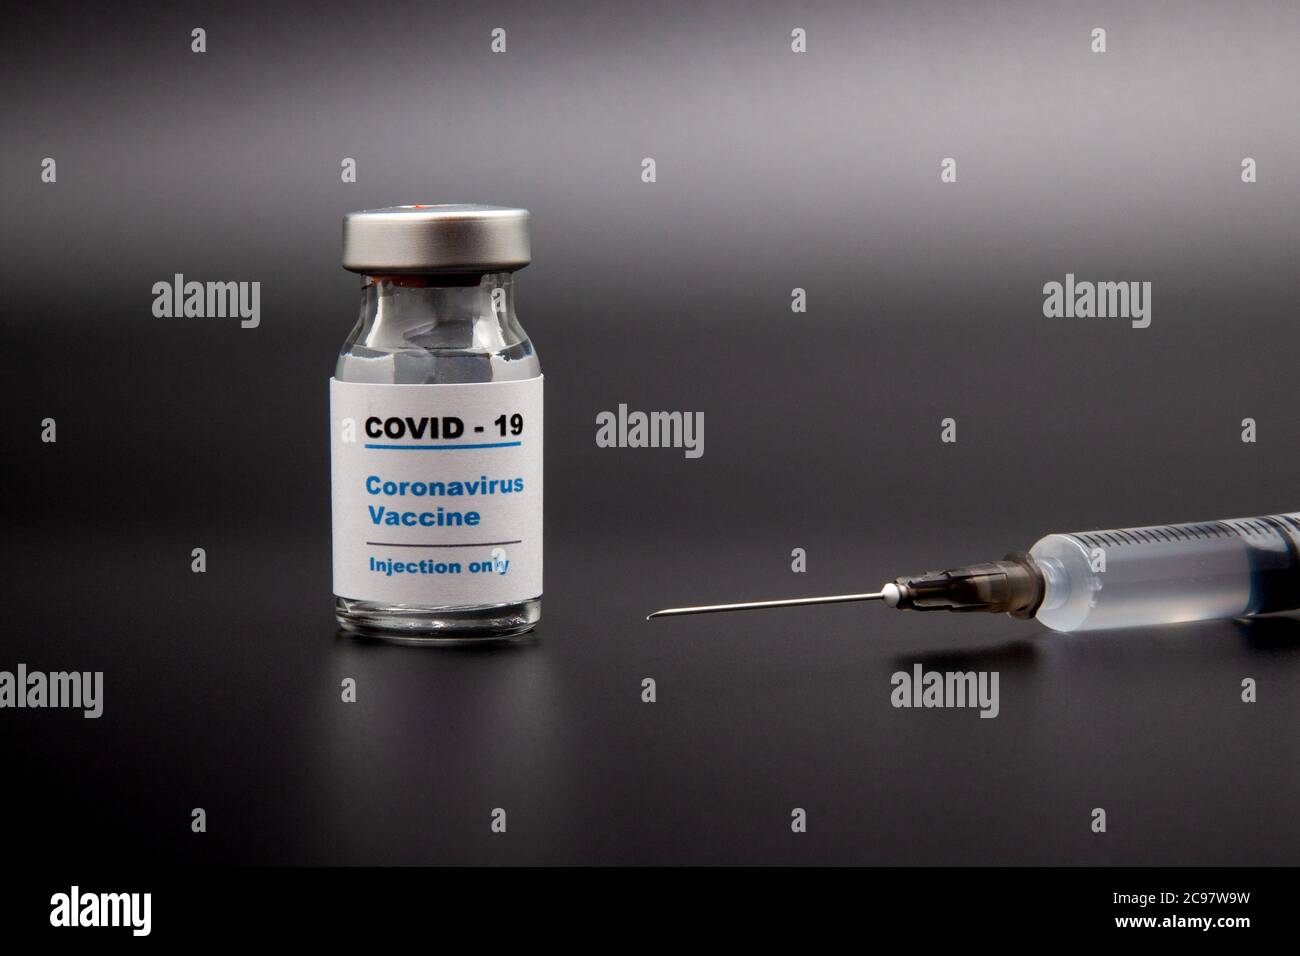 Petite bouteille de vaccin (flacon) avec une étiquette indiquant « Covid - 19 Corona virus Vaccine injection Only » et une seringue médicale isolée sur la vaccination noire Banque D'Images